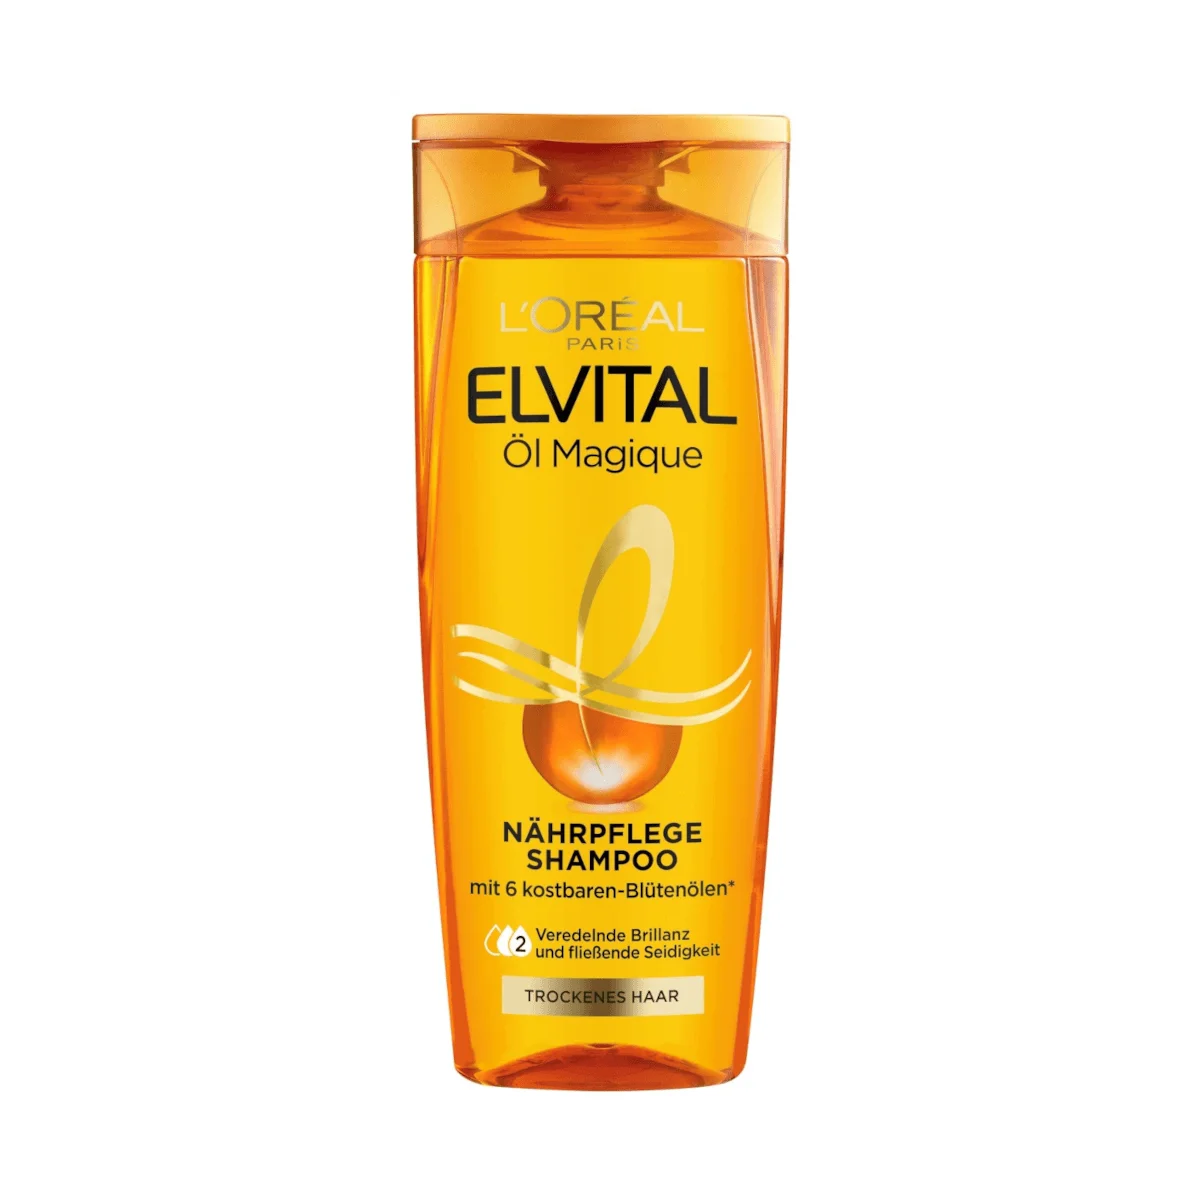 L'Oreal Elvital Öl Magique Nährpflege Shampoo, 300 ml